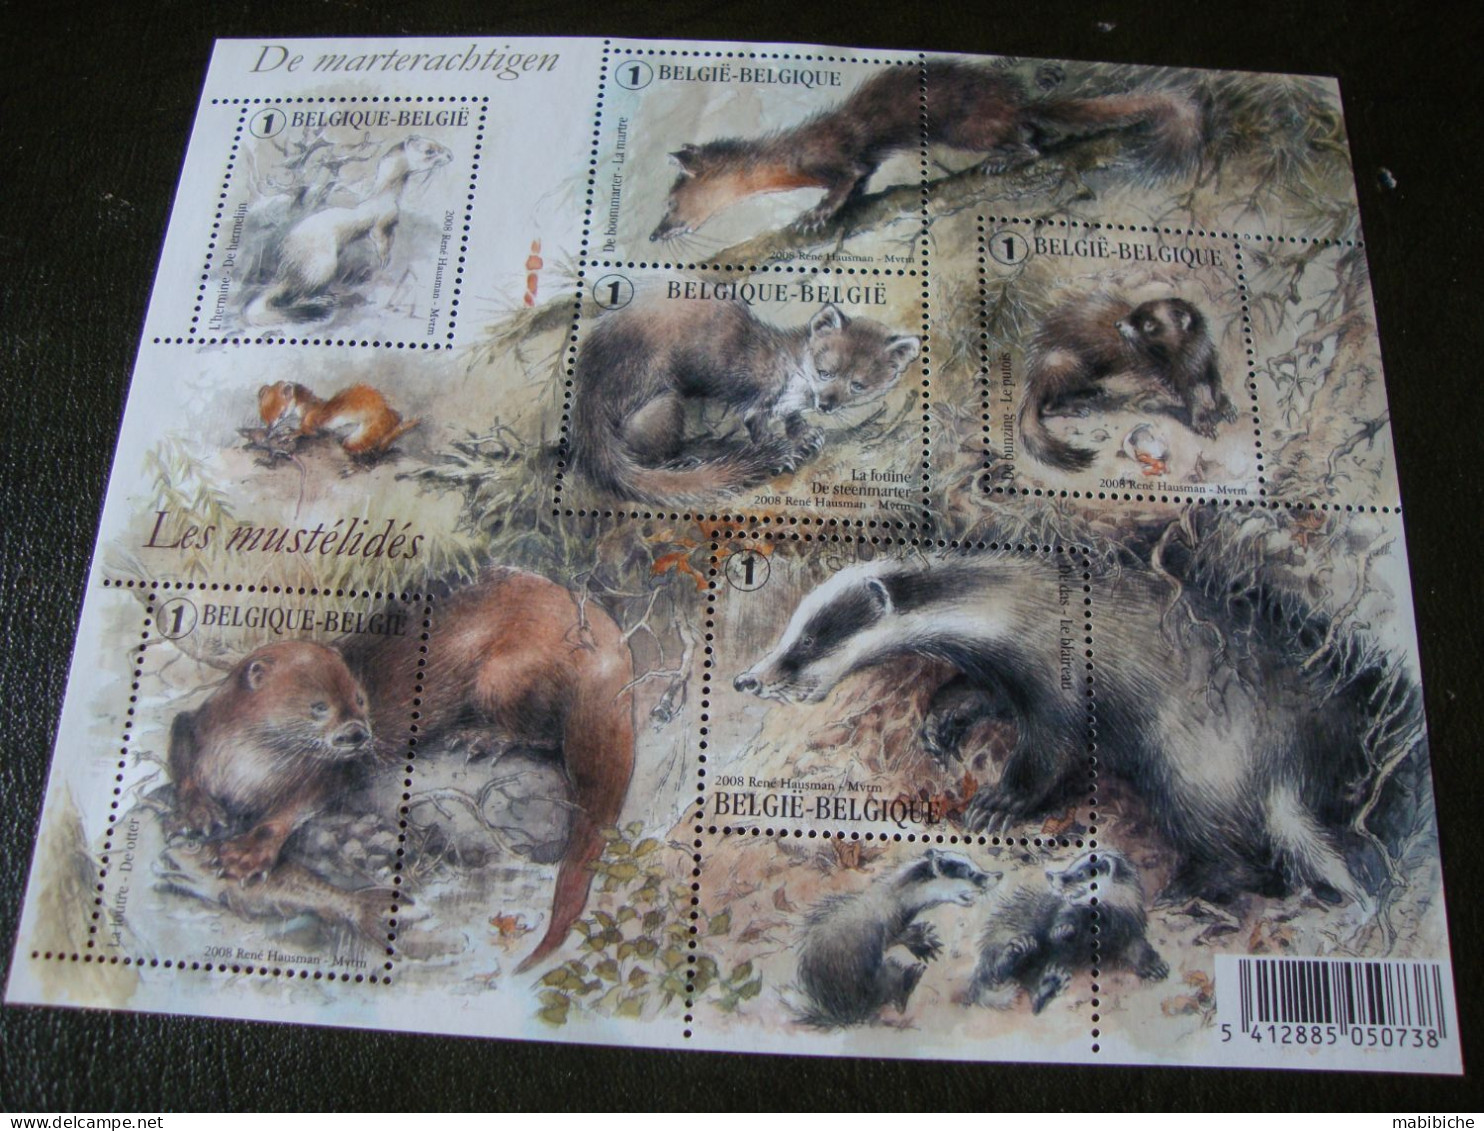 Tous les timbres de Luxphila 2008.